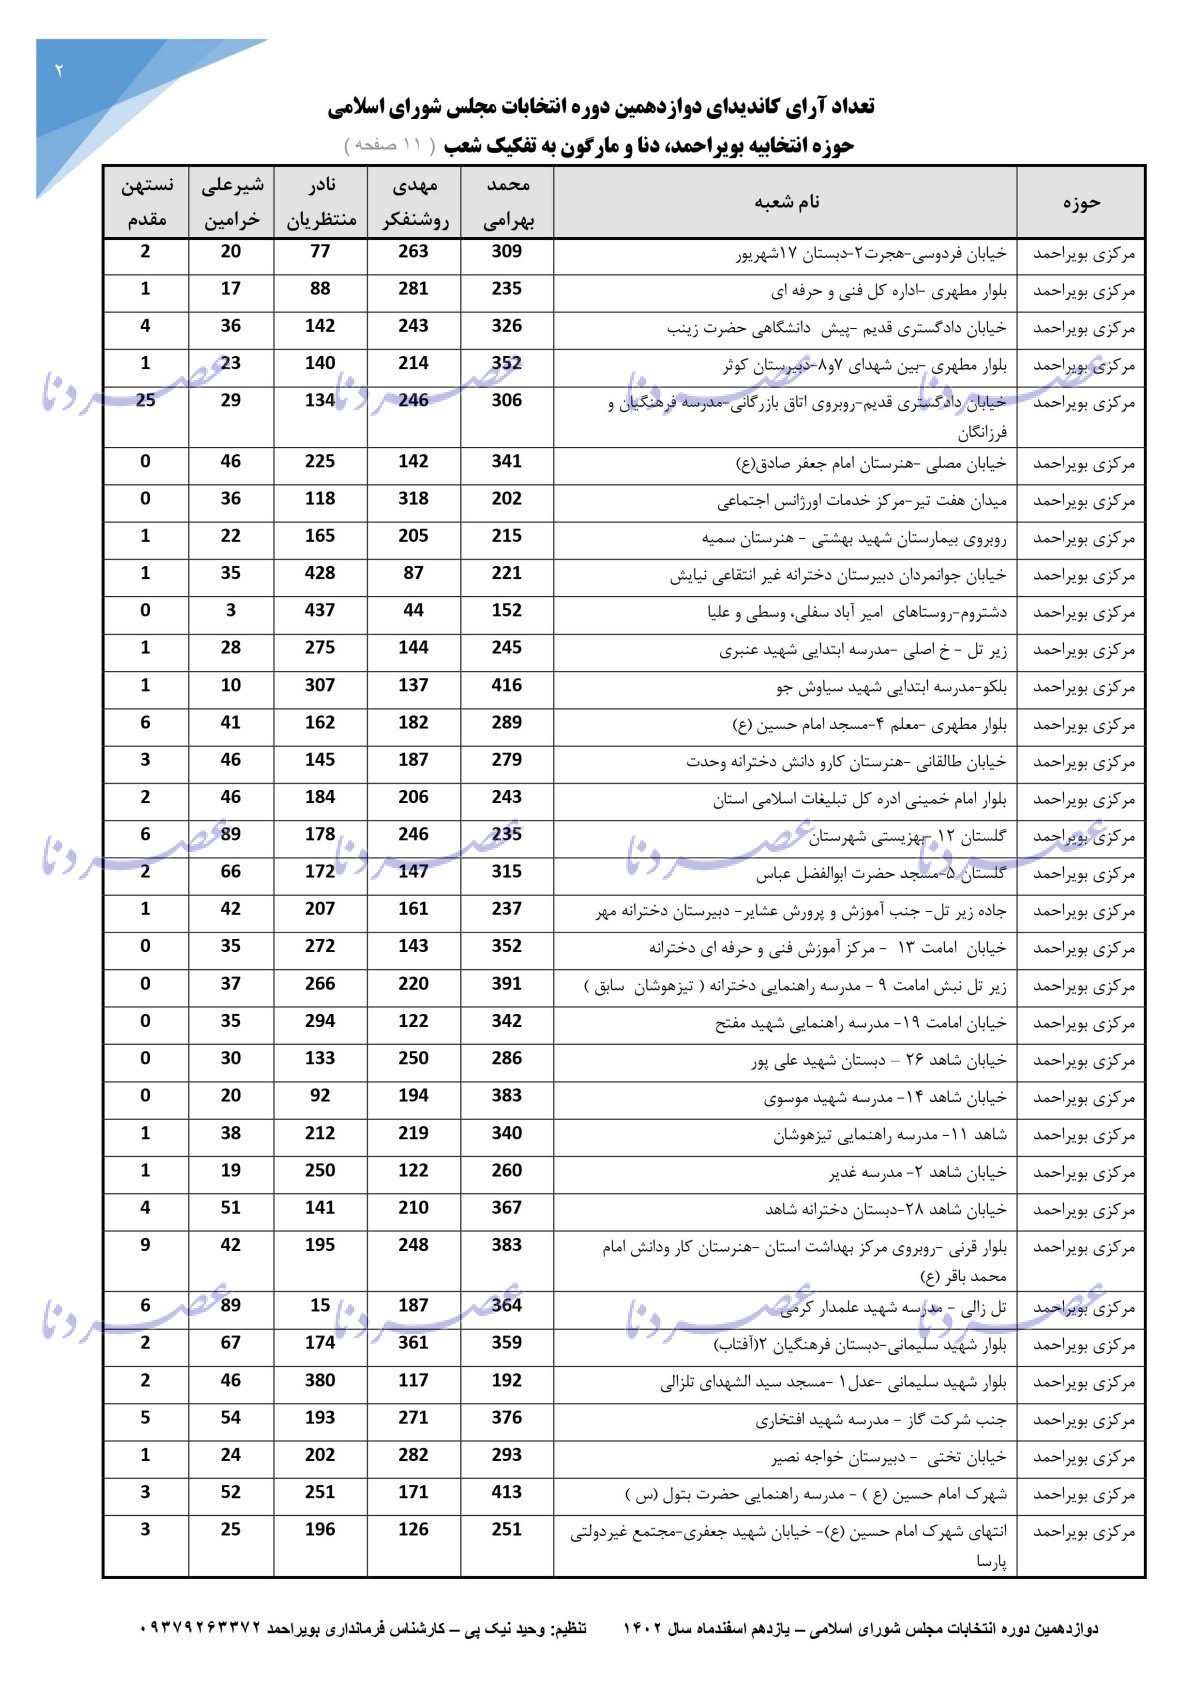 جزئیات آرای کاندیداهای انتخابات مجلس حوزه بویراحمد، دنا و مارگون به تفکیک شعب